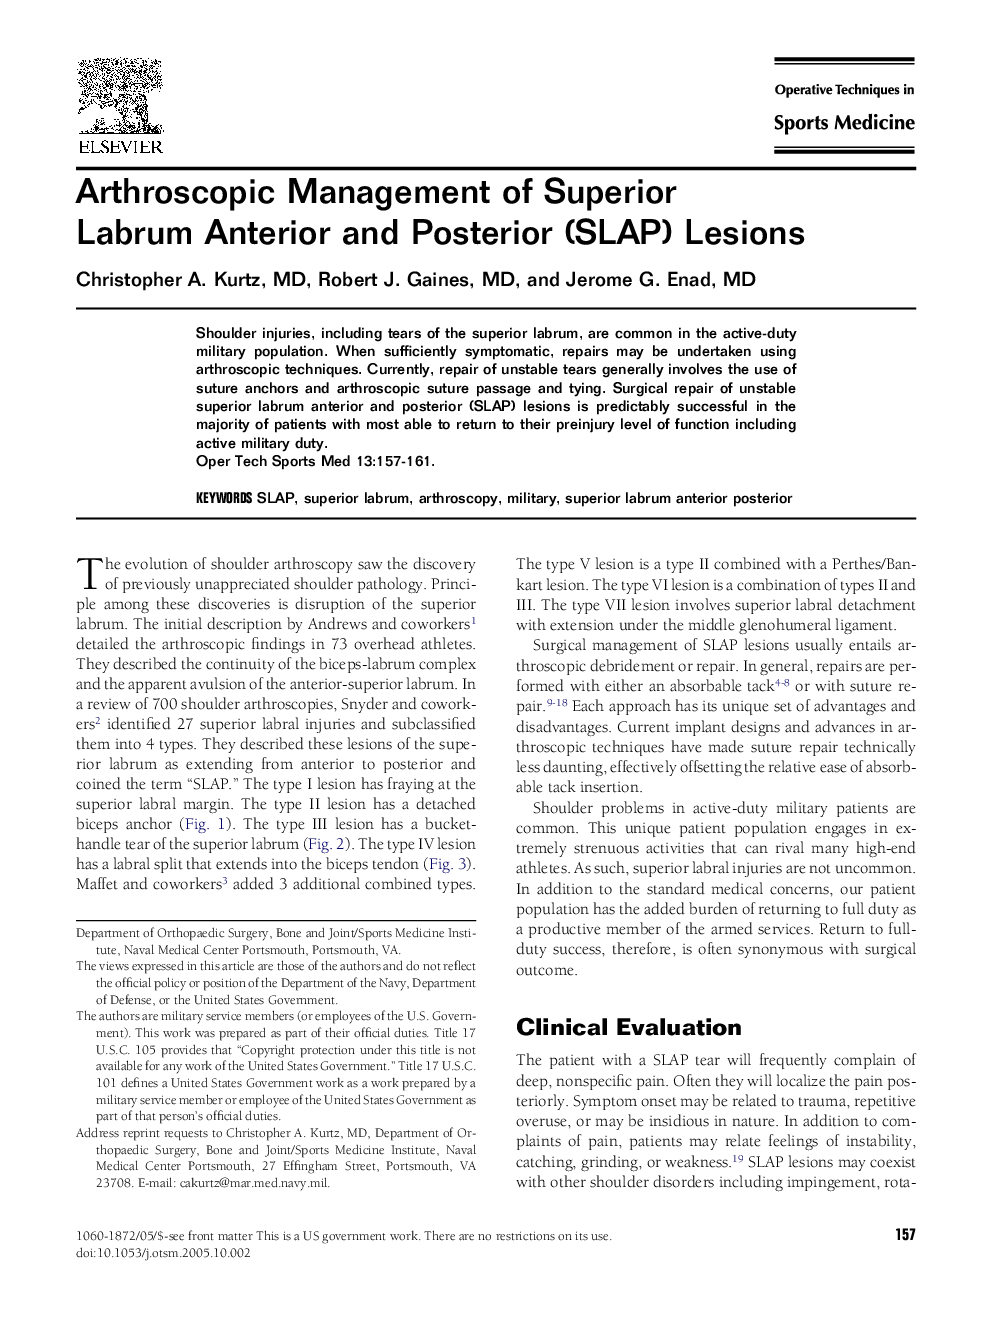 Arthroscopic Management of Superior Labrum Anterior and Posterior (SLAP) Lesions